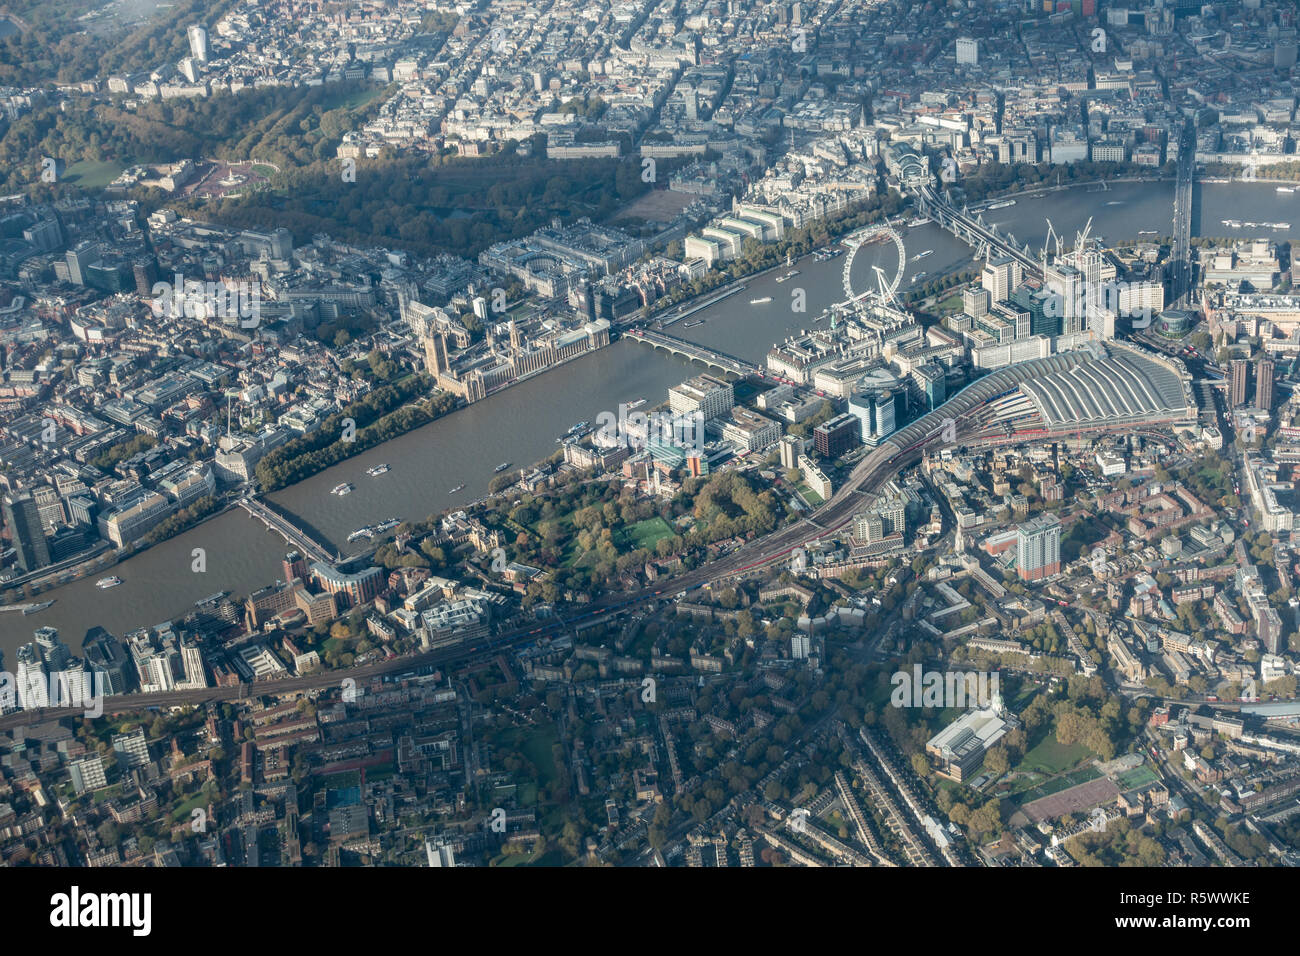 London Luftaufnahme zeigt die wichtigsten Touristenattraktionen und Sehenswürdigkeiten wie der Buckingham Palace, Nelson's Column und die Häuser des Parlaments Stockfoto